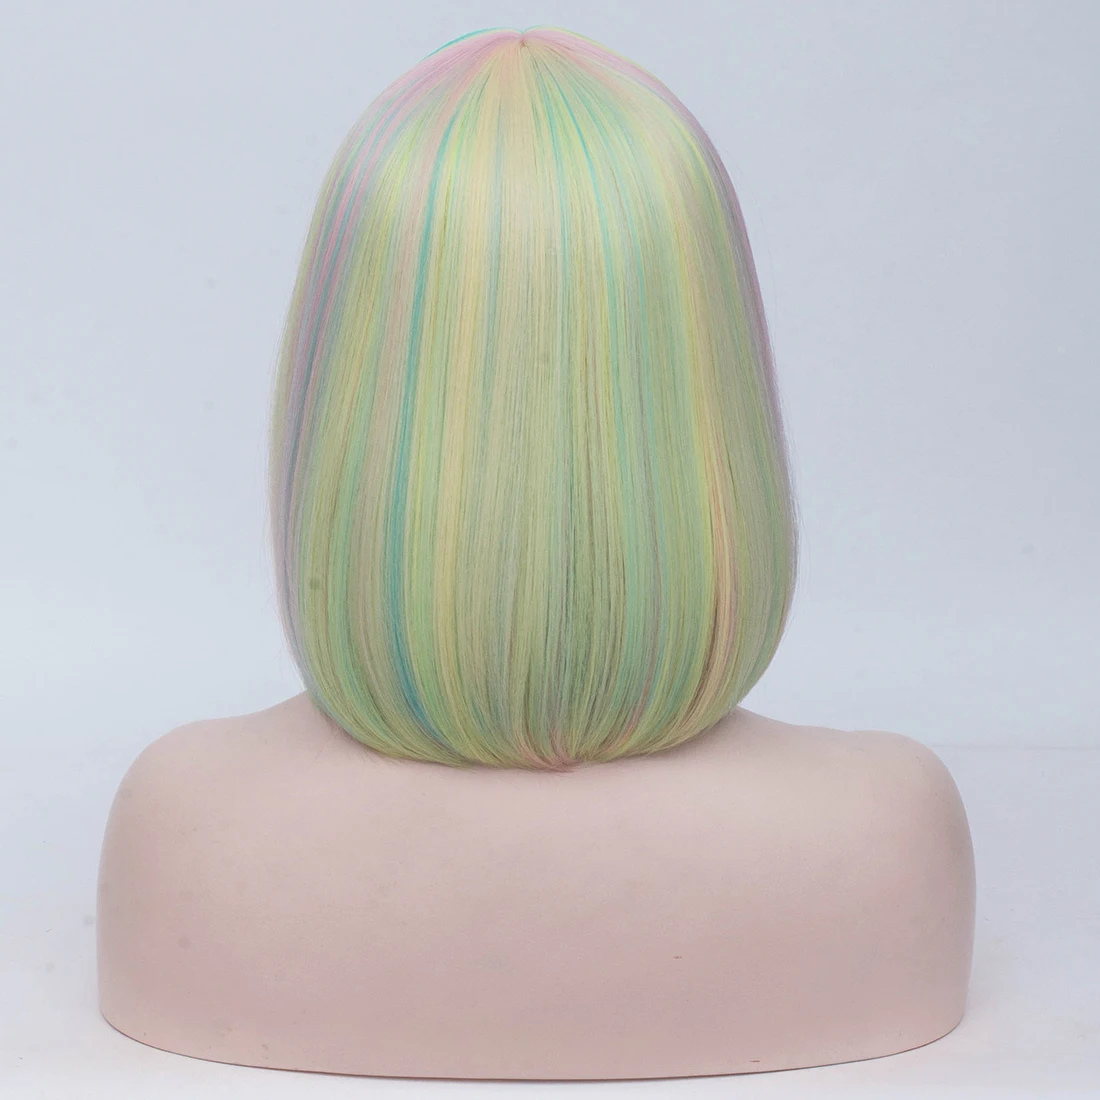 Similler женские короткие прямые волосы синтетические парики для косплея Хэллоуин зеленый желтый розовый смешанные цвета боб парик